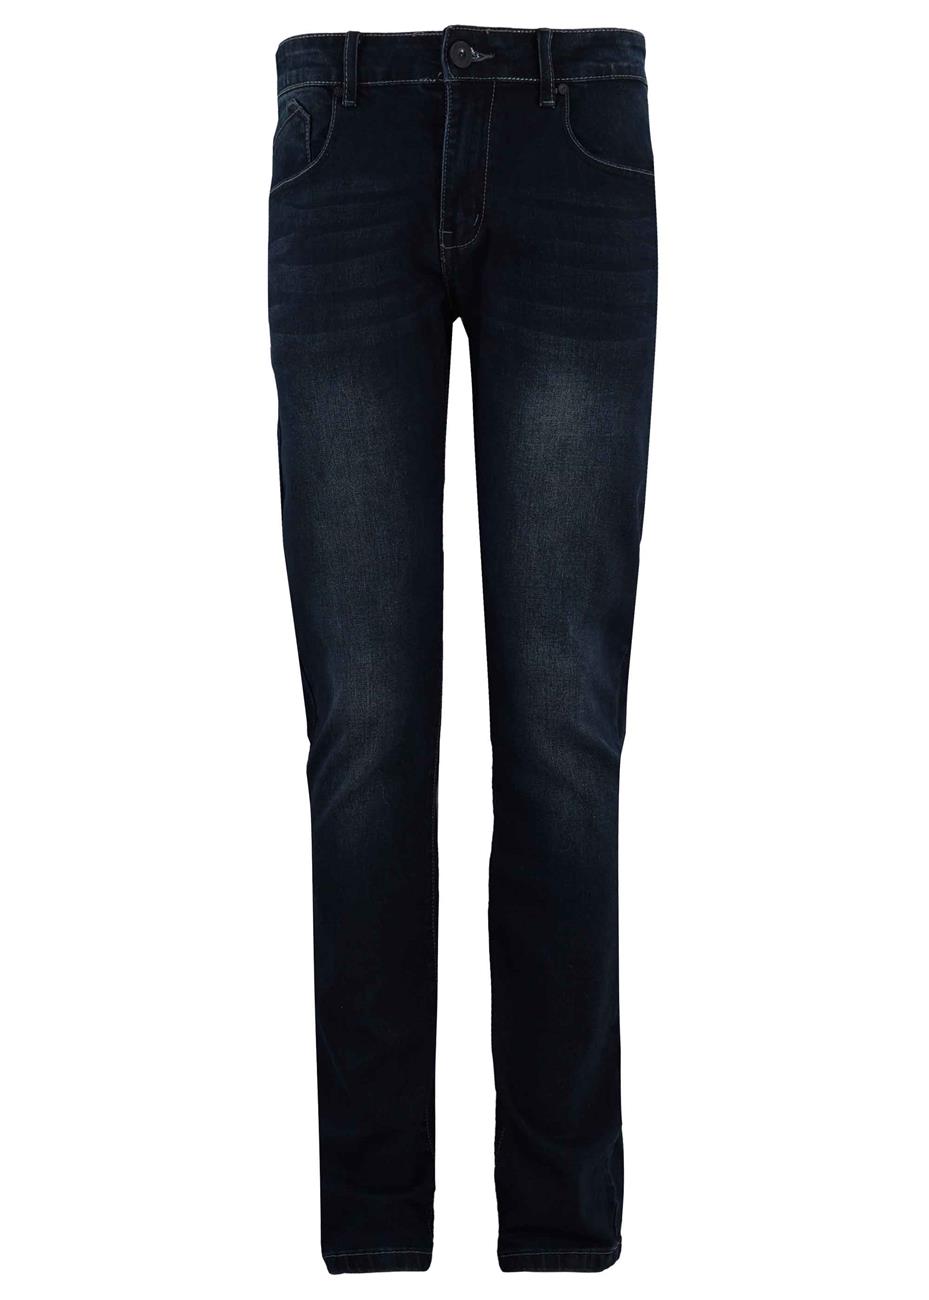 Ανδρικό παντελόνι χρώμα jean, διαθέτει ελαστικότητα. Denim collection.